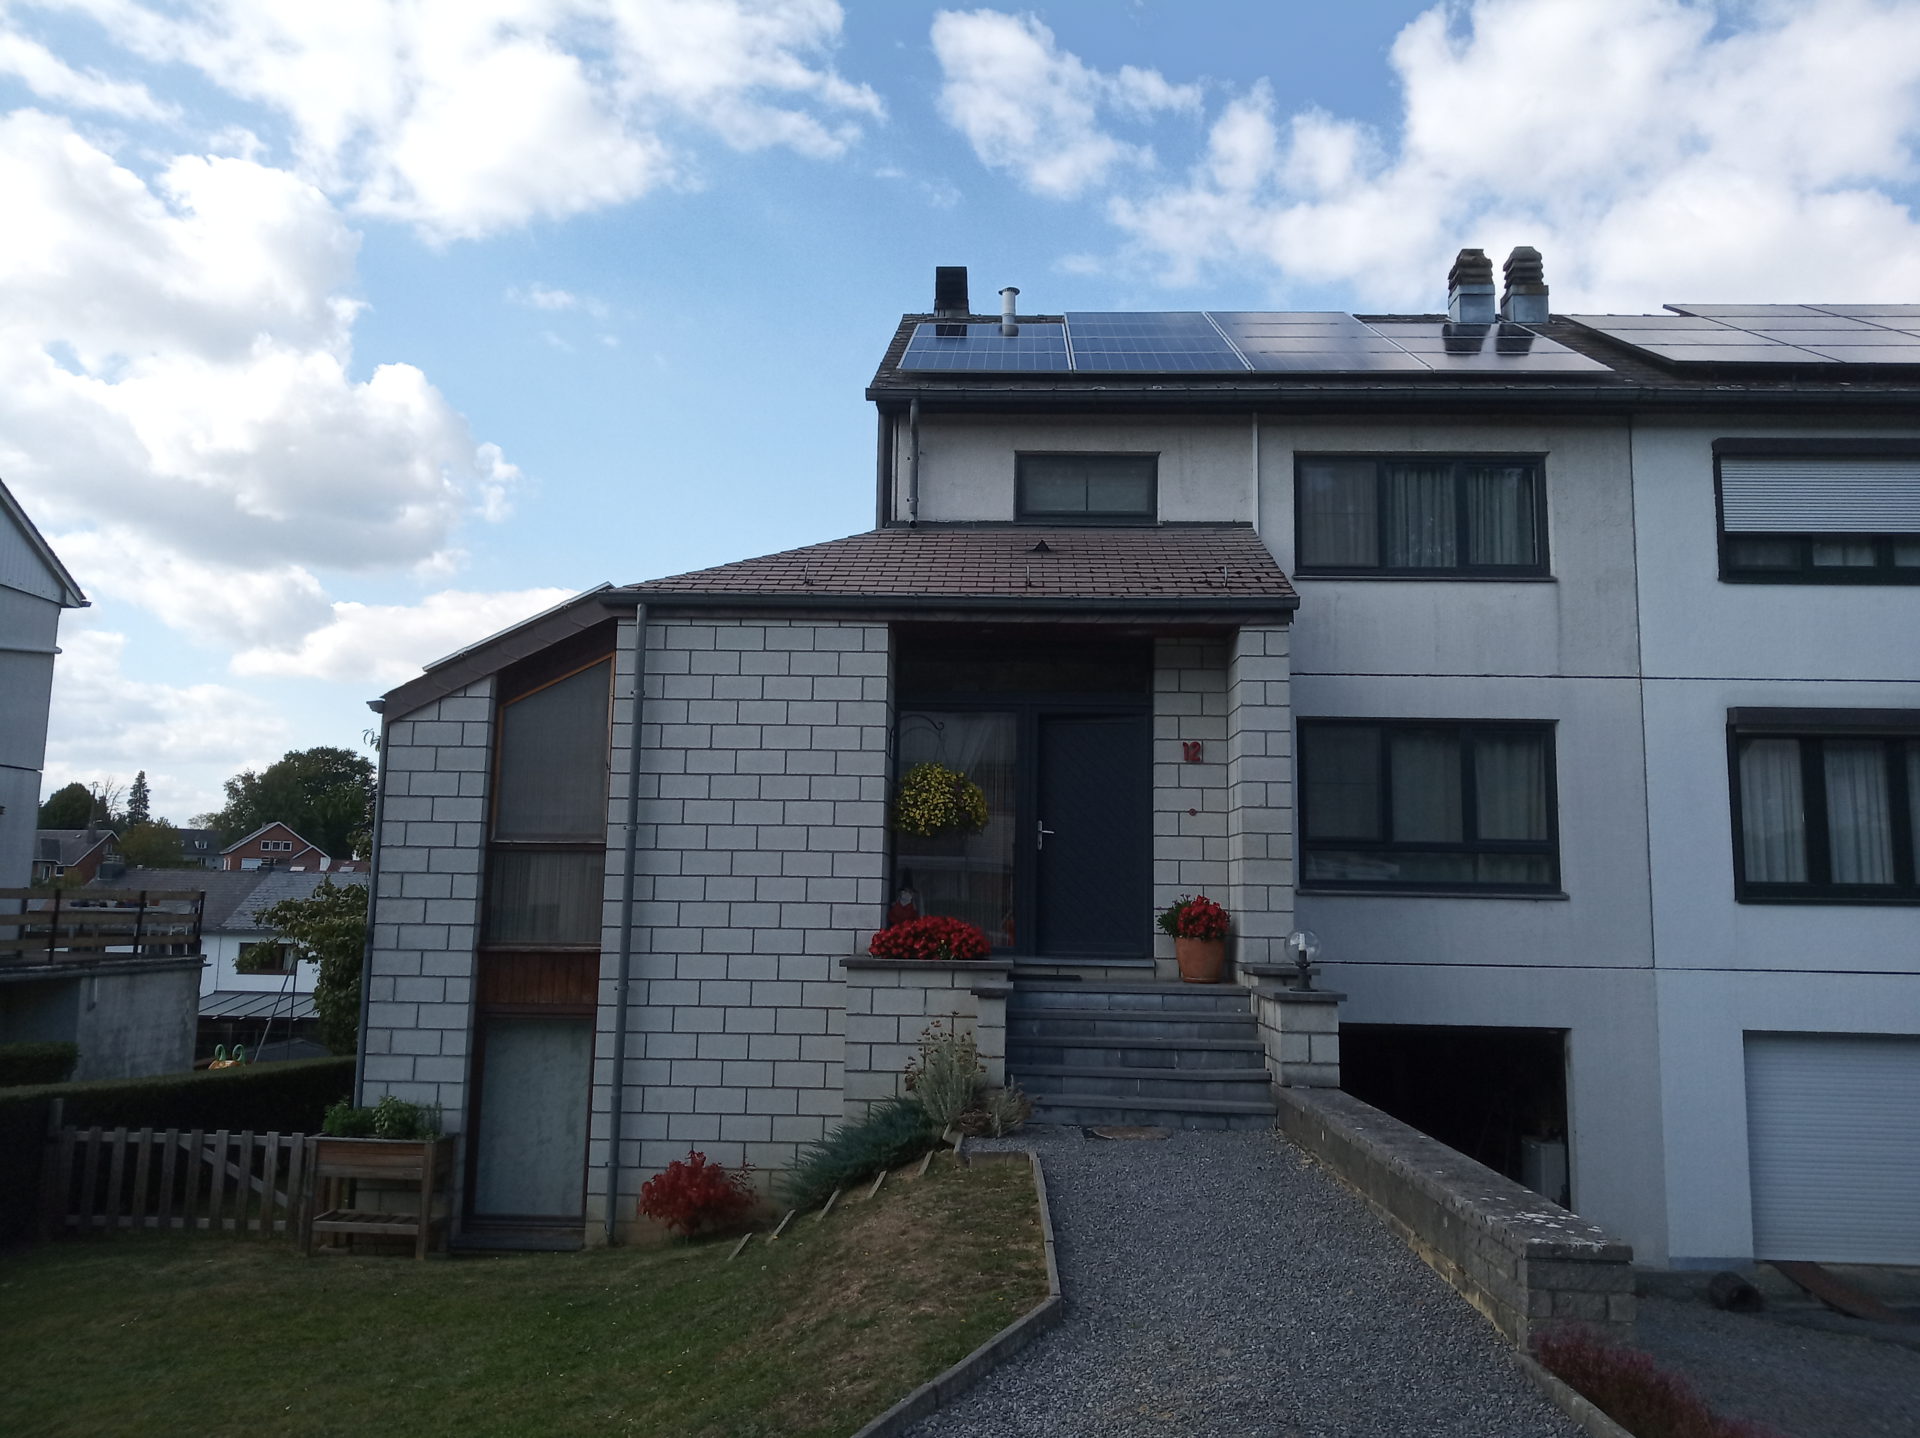 Raisons d'installer des panneaux solaires en province de Namur